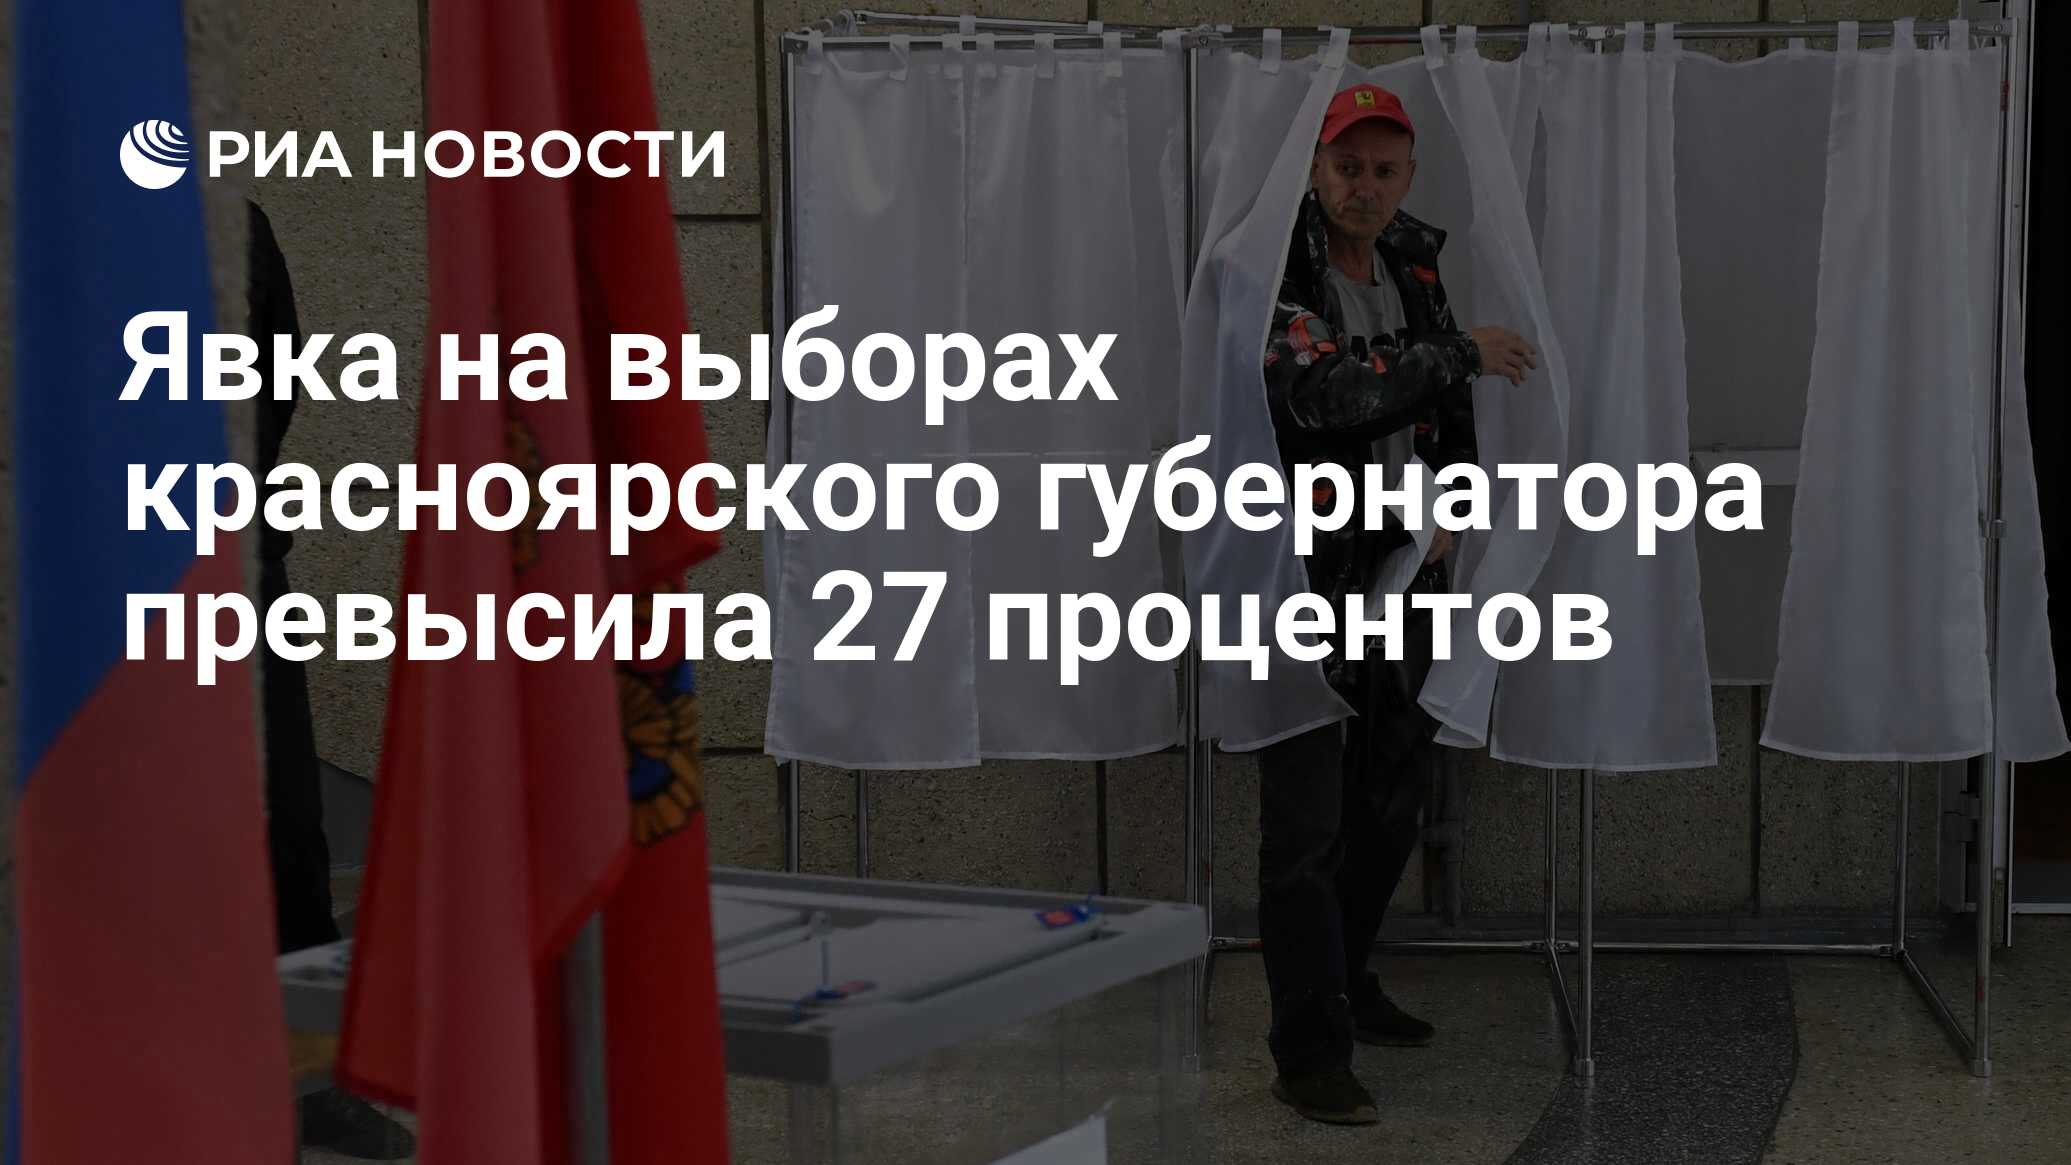 Процент проголосовавших в красноярском крае